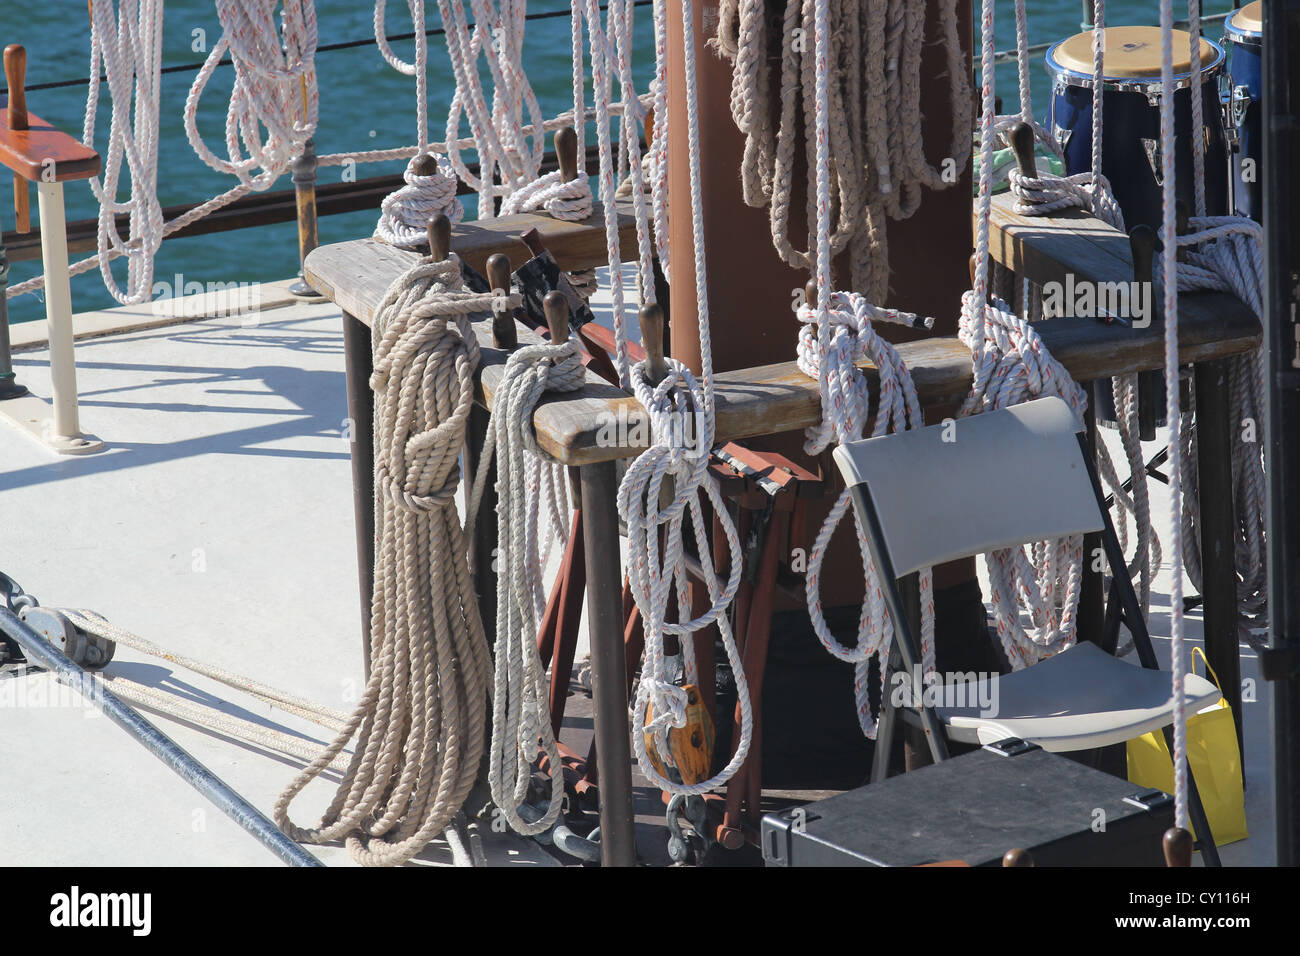 Many ropes on a sail boat Stock Photo